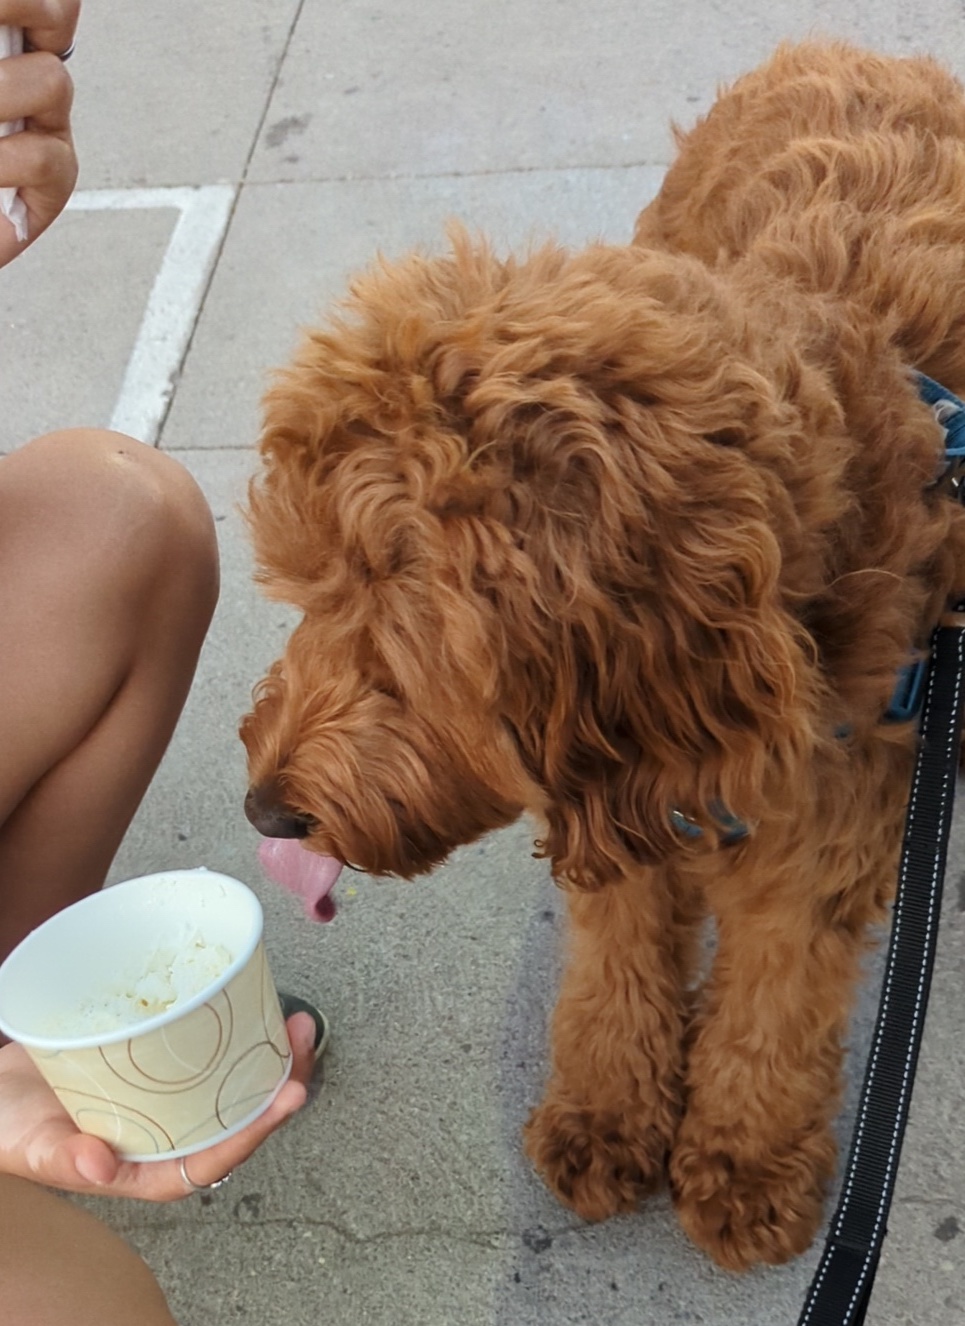 Milo begging for ice cream